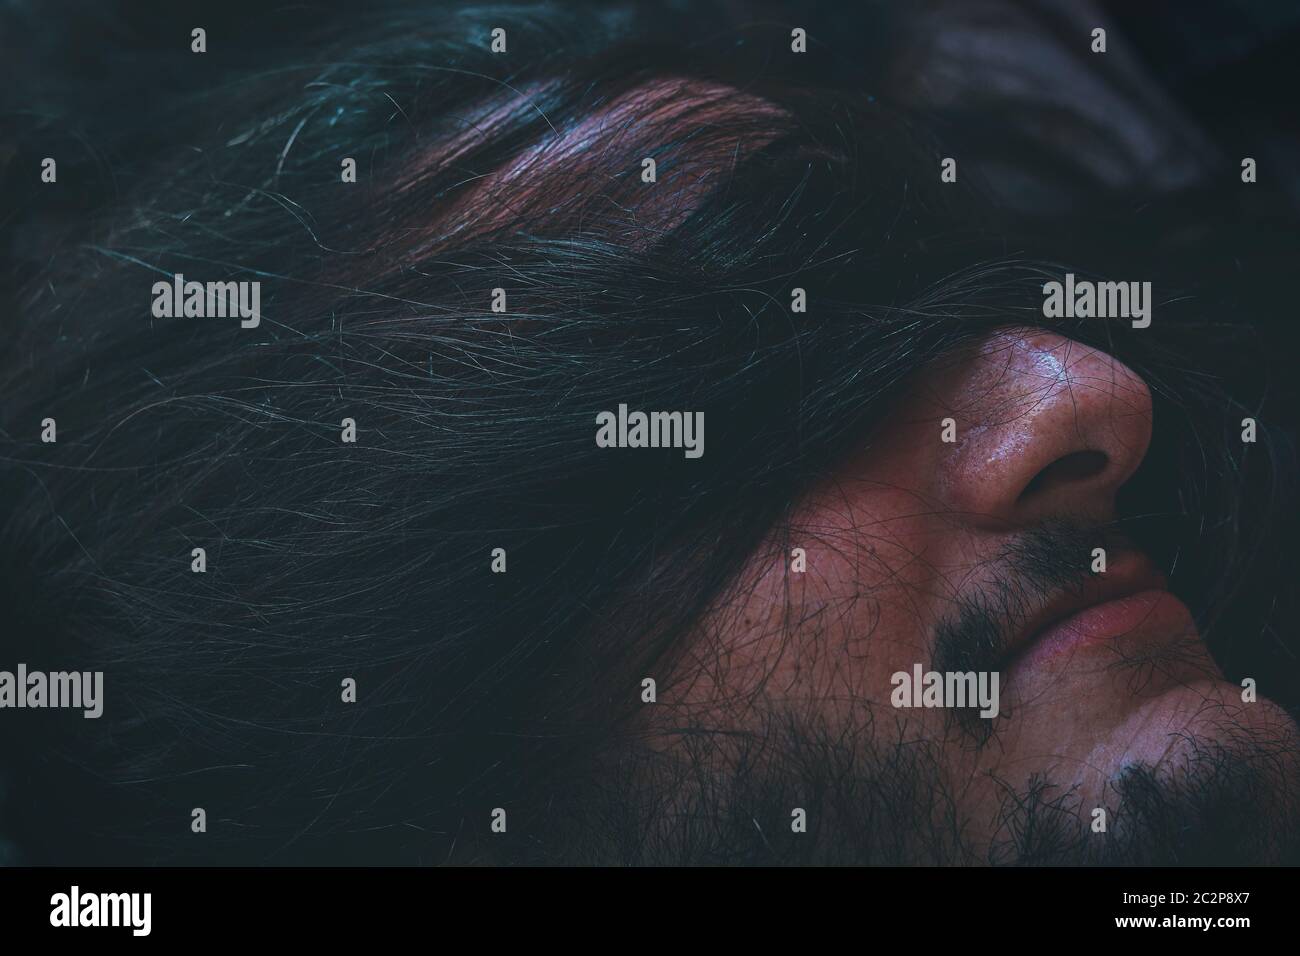 Photo conceptuelle d'un homme aveuglés par les cheveux humains montrant le concept de lutte, de maladie mentale et de stigmatisation sociale Banque D'Images